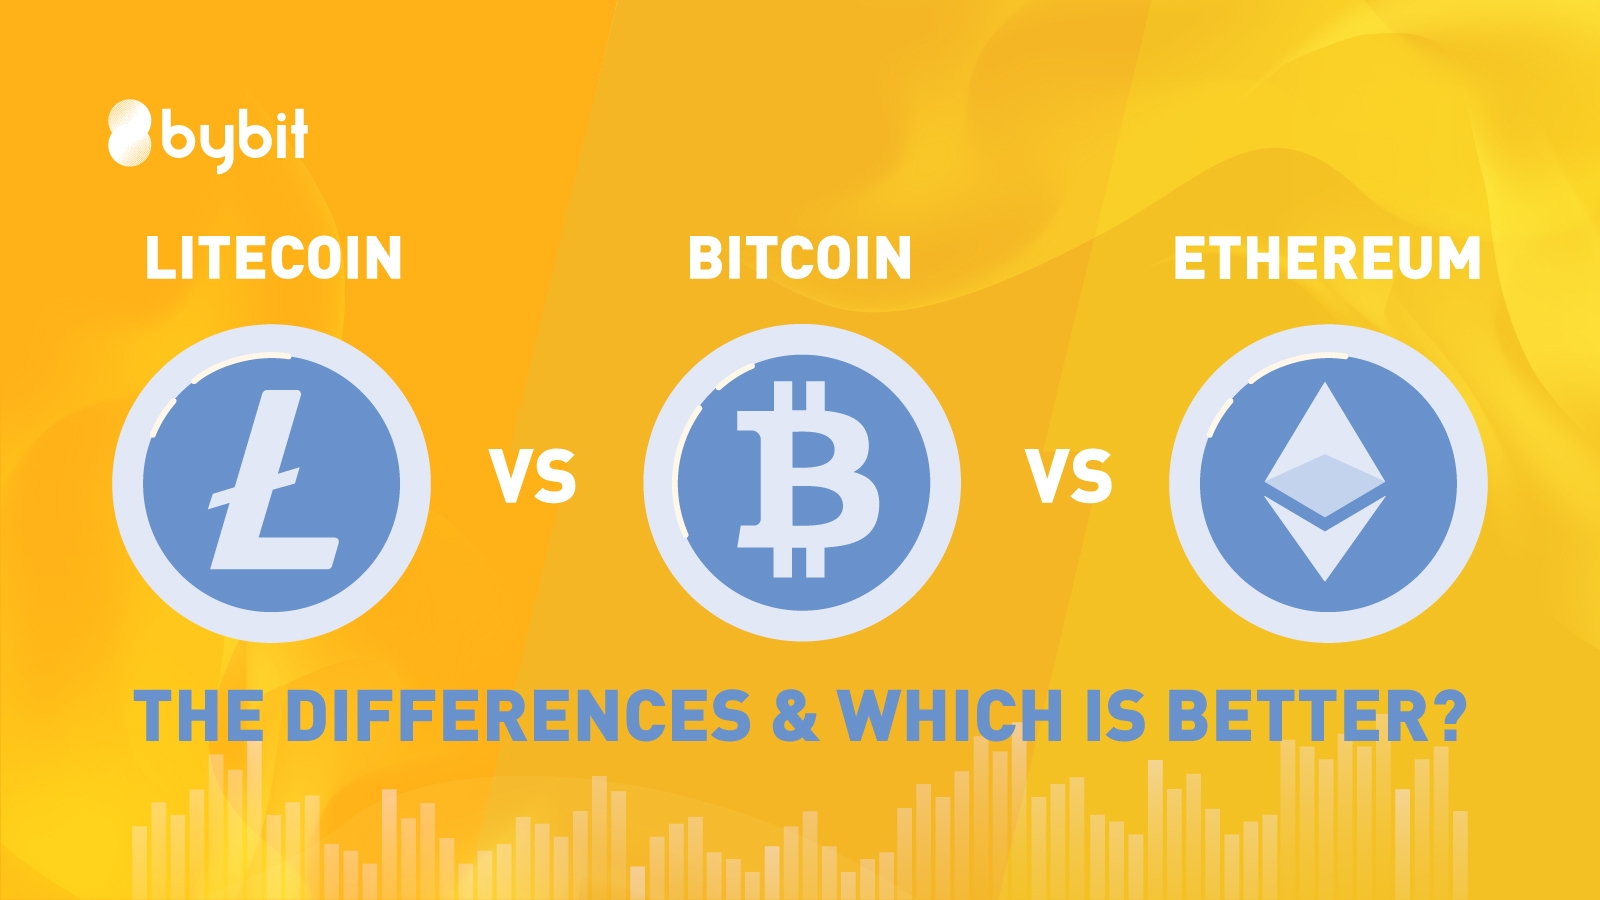 fektessen be a bitcoin vs ethereum vs litecoinba hogyan gazdagodjak meg munka nélkül